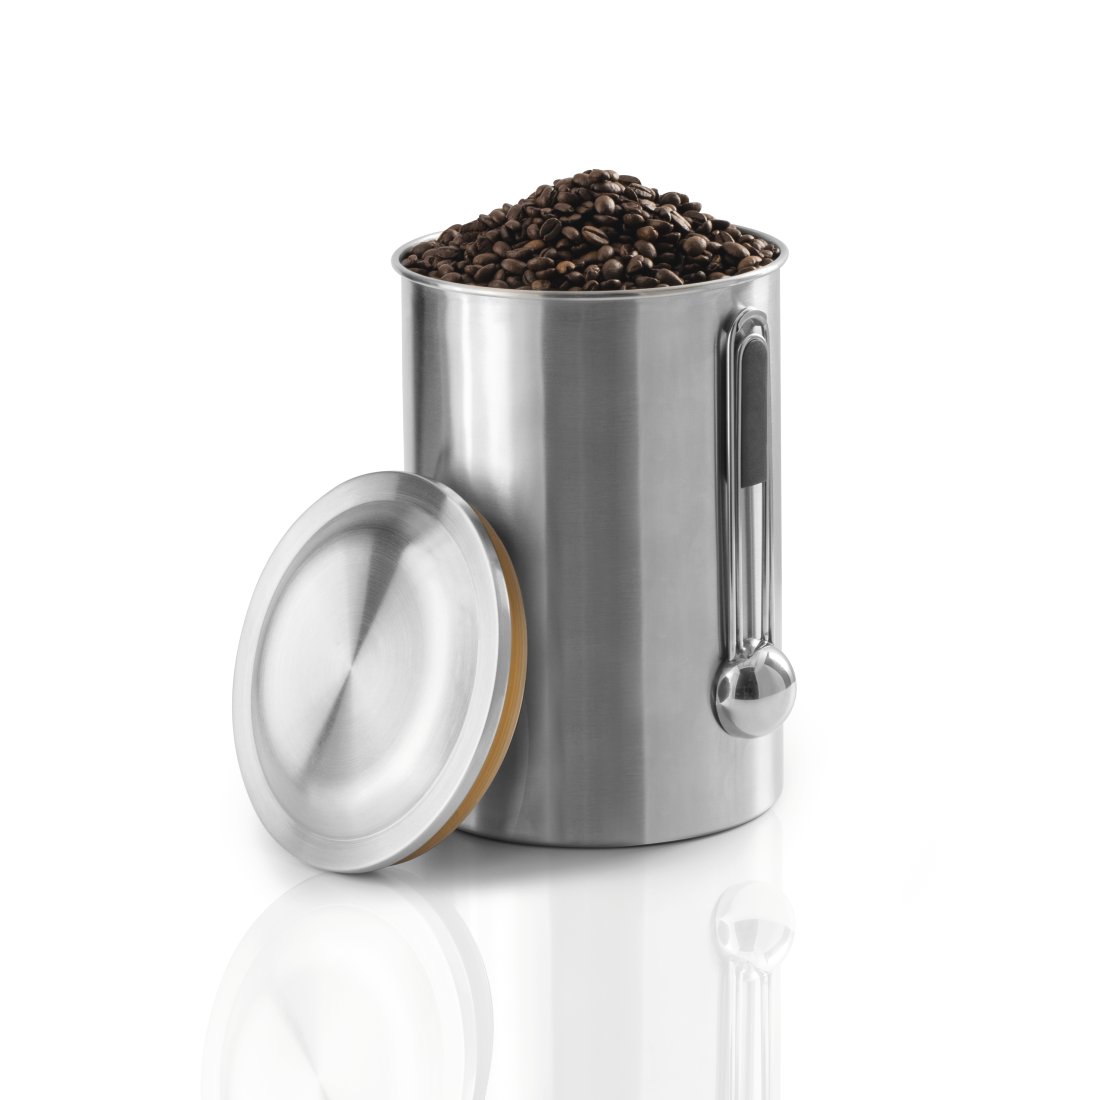 abx2 Druckfähige Abbildung 2 - Xavax, Edelstahldose für 1 kg Kaffeebohnen, mit Löffel, Silber